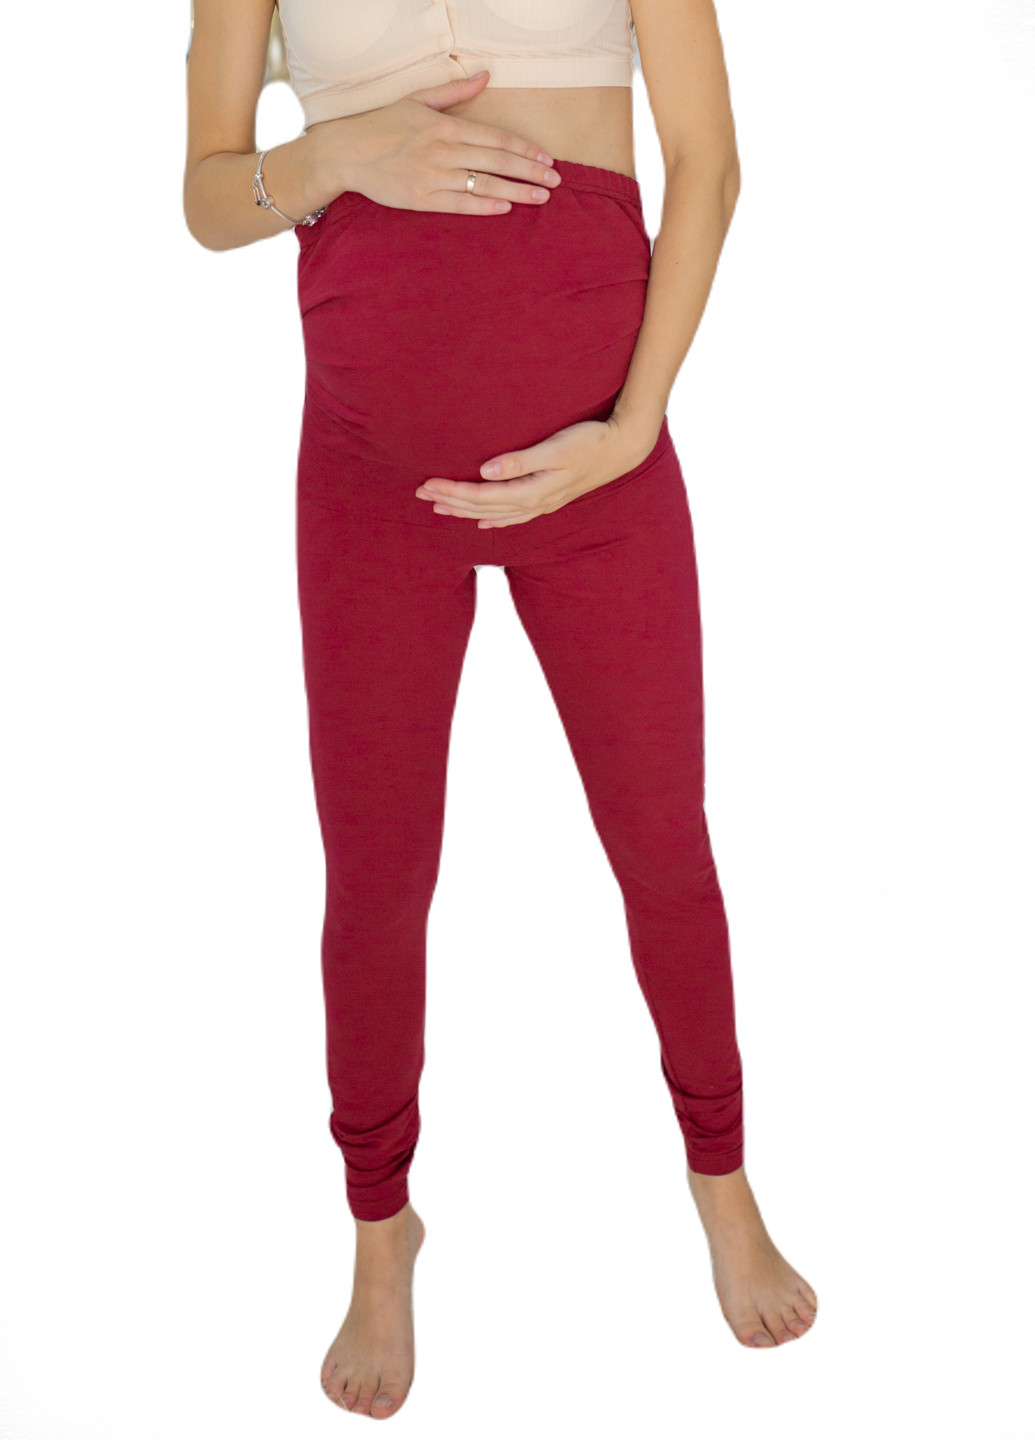 630104 Лосини для вагітних трикотажні Червоні HN (221955011)